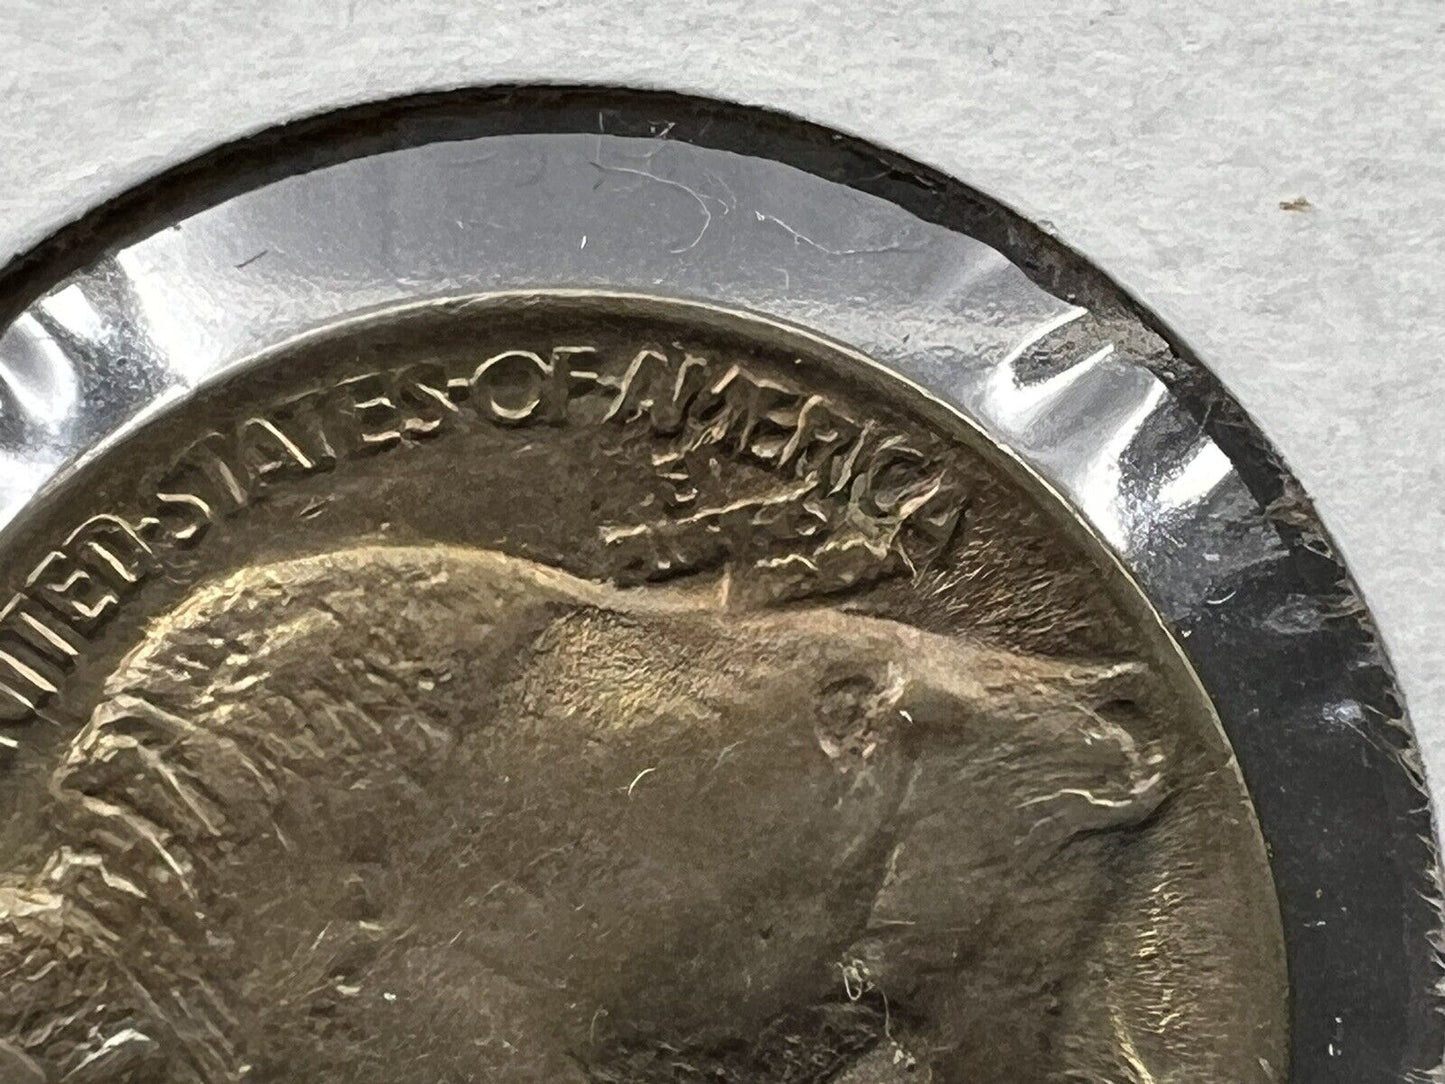 1913 P Buffalo Indian Head Nickel 5c BU UNC Type 1 Die Clash @ E Plurubus #1